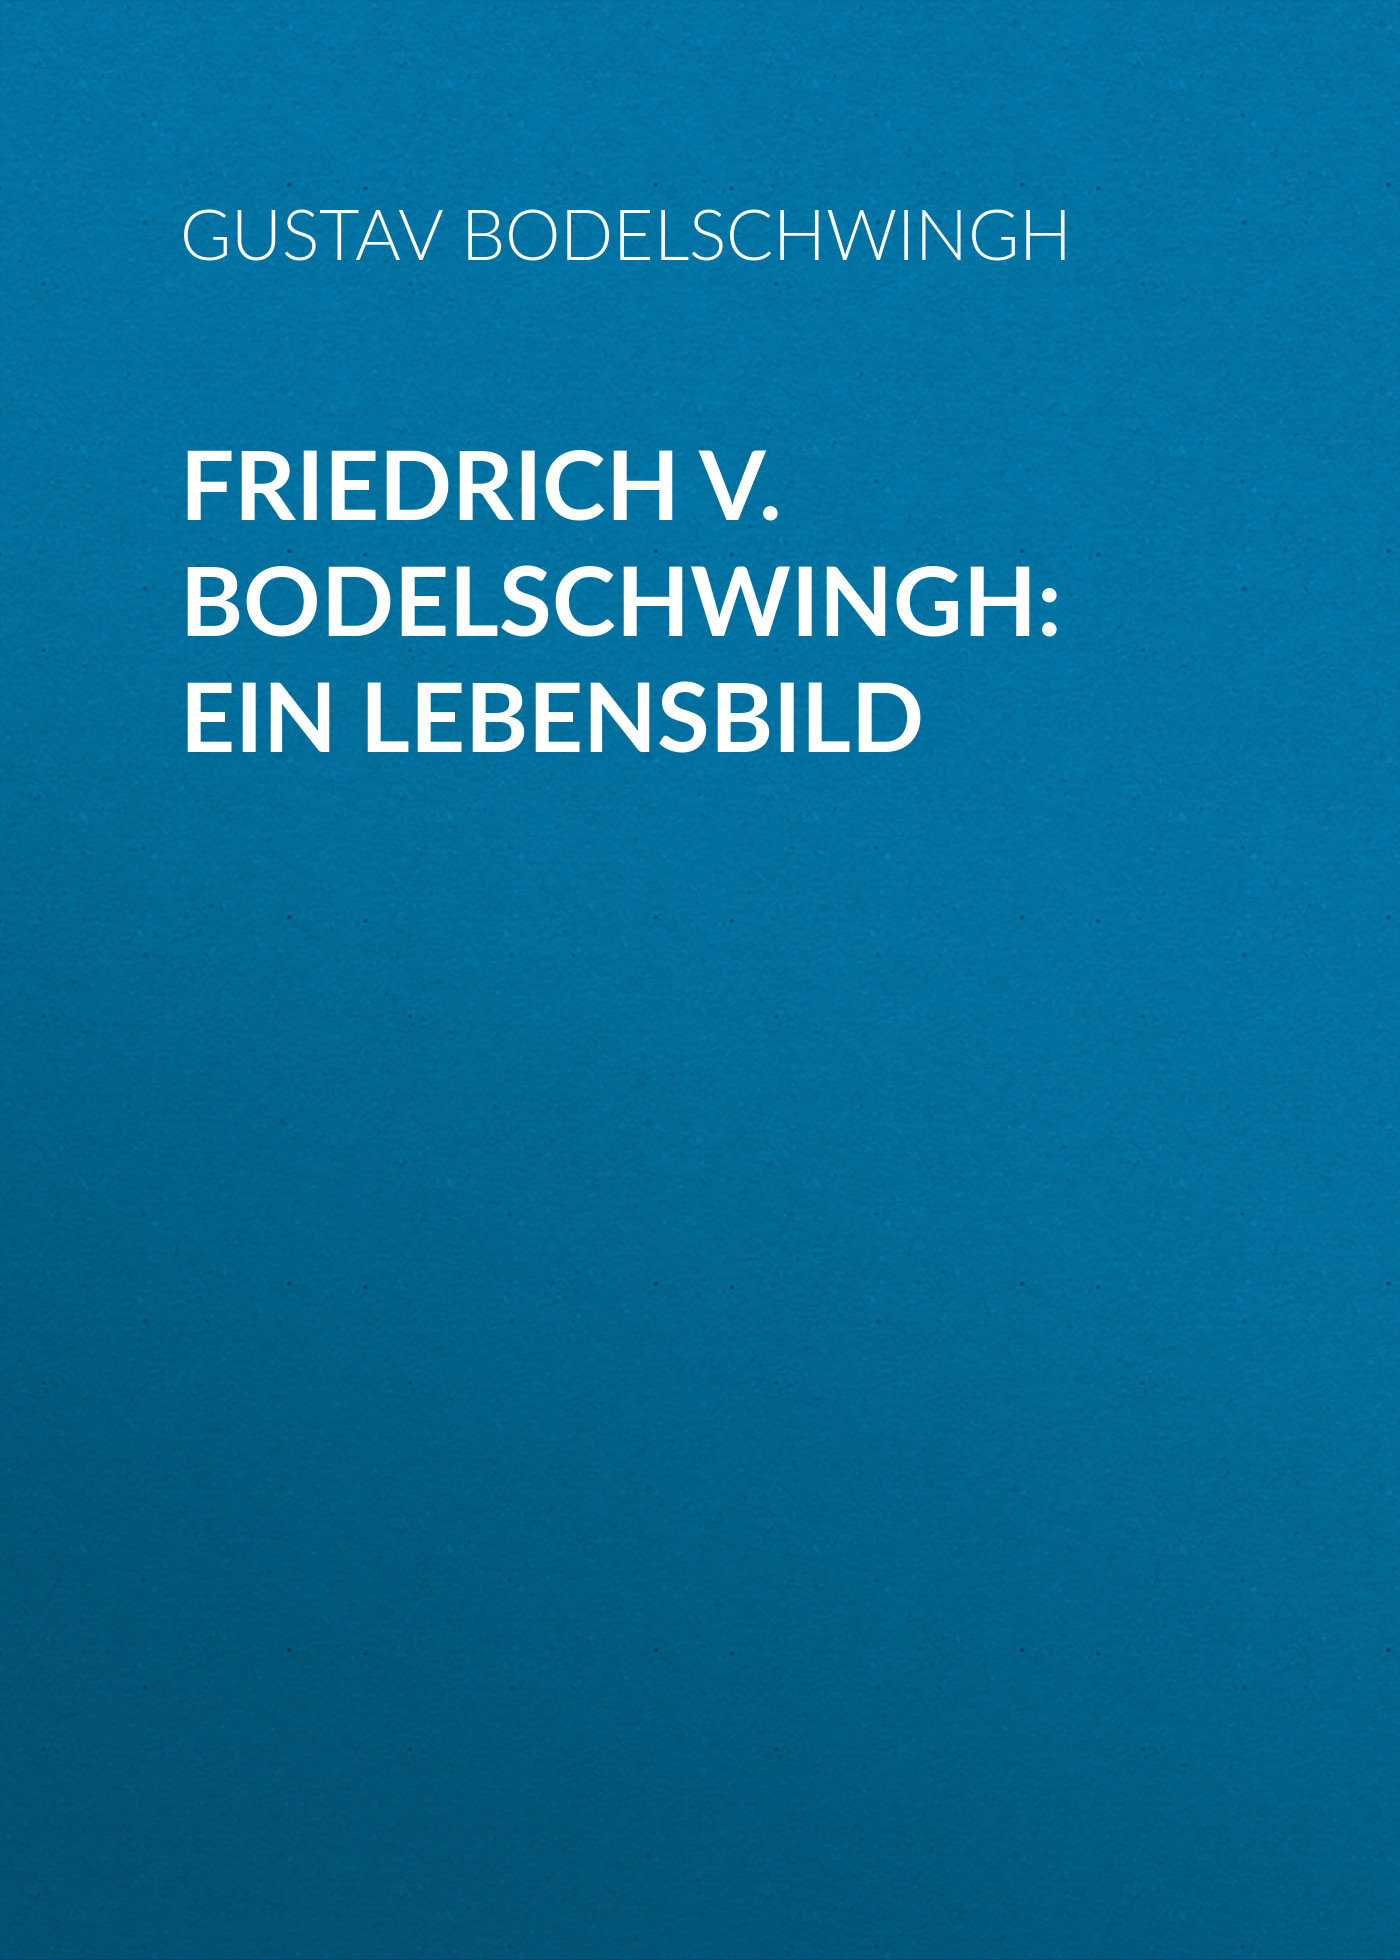 Книга Friedrich v. Bodelschwingh: Ein Lebensbild из серии , созданная Gustav Bodelschwingh, может относится к жанру Зарубежная старинная литература, Зарубежная классика. Стоимость электронной книги Friedrich v. Bodelschwingh: Ein Lebensbild с идентификатором 24179084 составляет 0 руб.